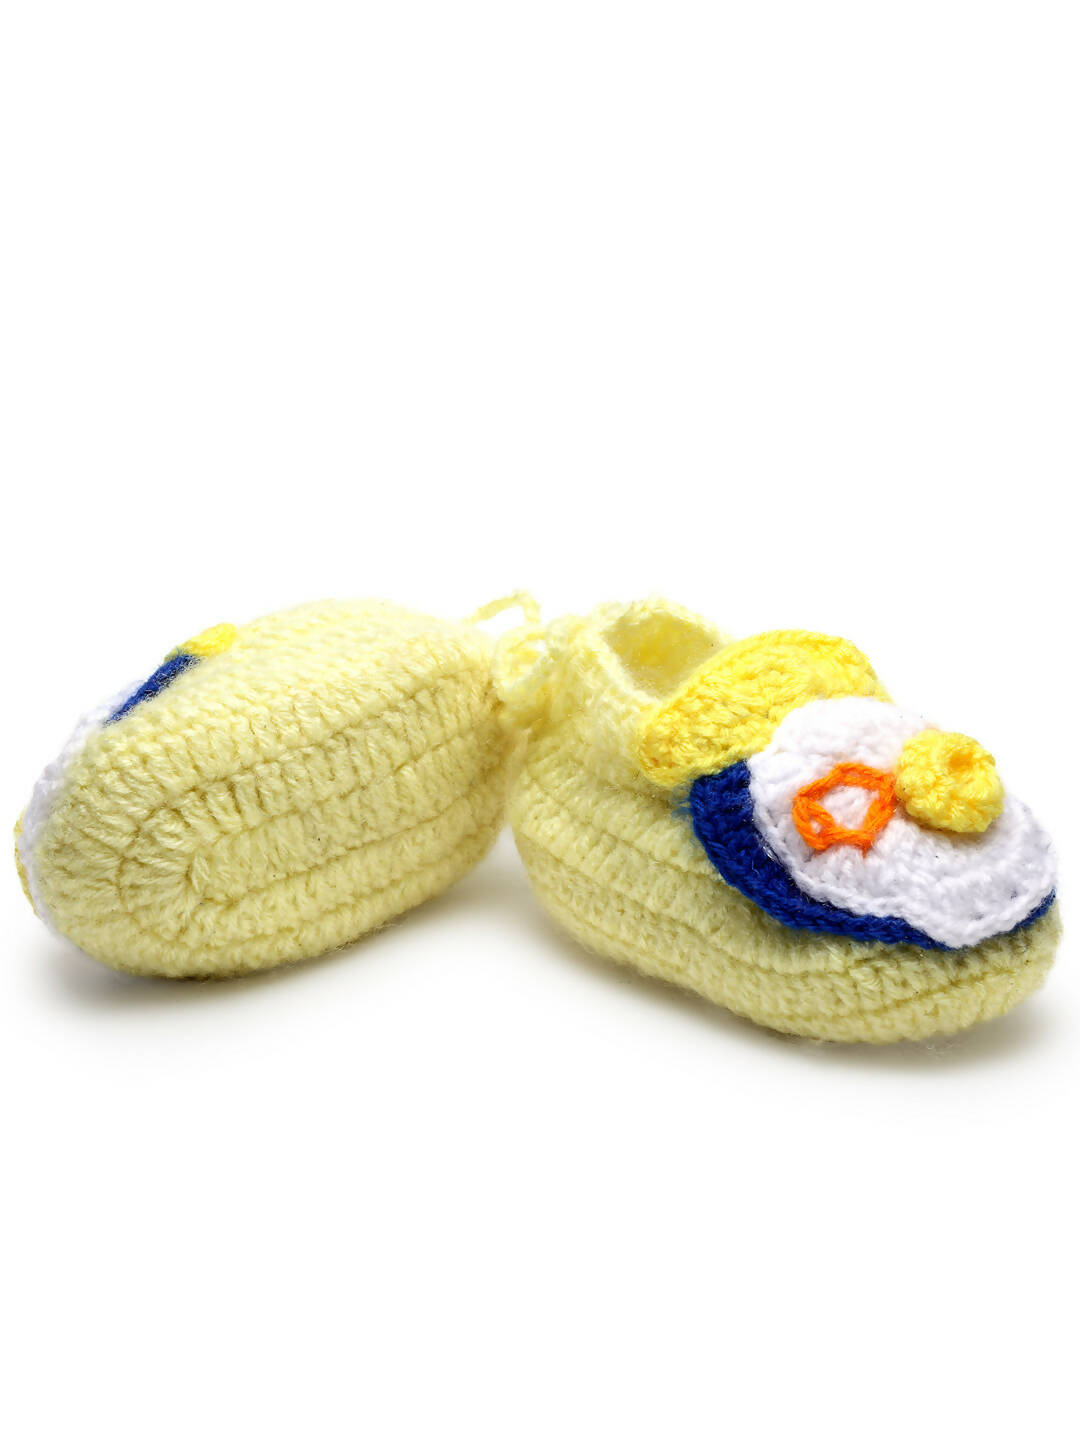 Chutput Kids Woollen Hand Knitted Self Desgin Booties - Yellow - Distacart